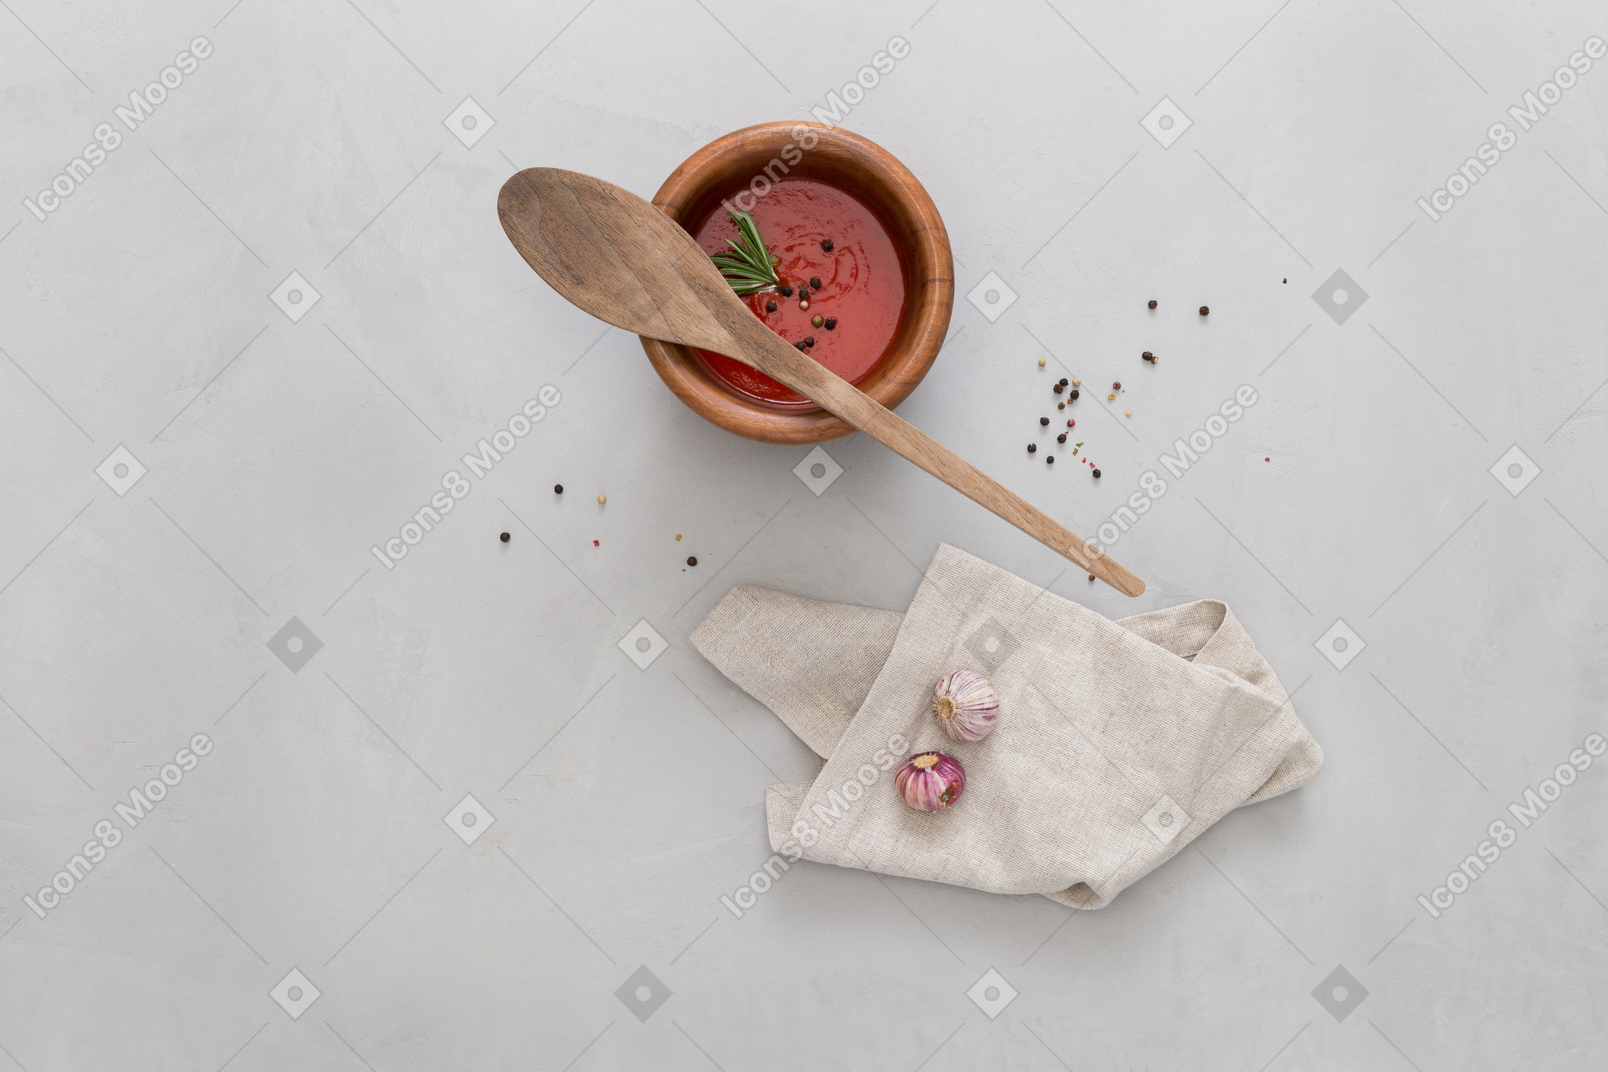 Un bol de gazpacho, un poco de ajo y una cuchara de madera.